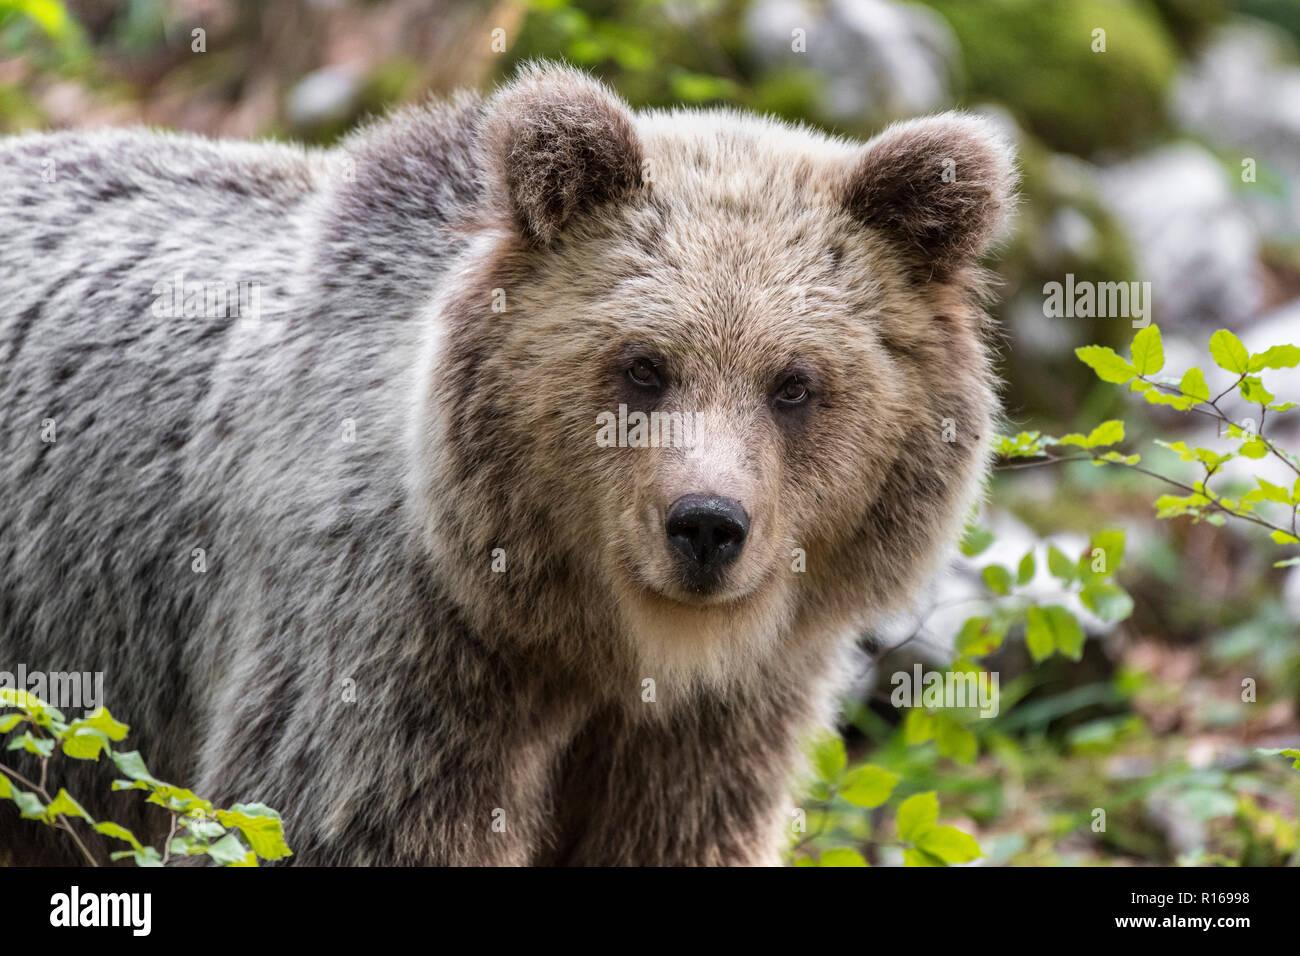 Europäische Braunbär (Ursus arctos arctos), Porträt, Notranjska Region, die Dinarischen Alpen, Slowenien Stockfoto